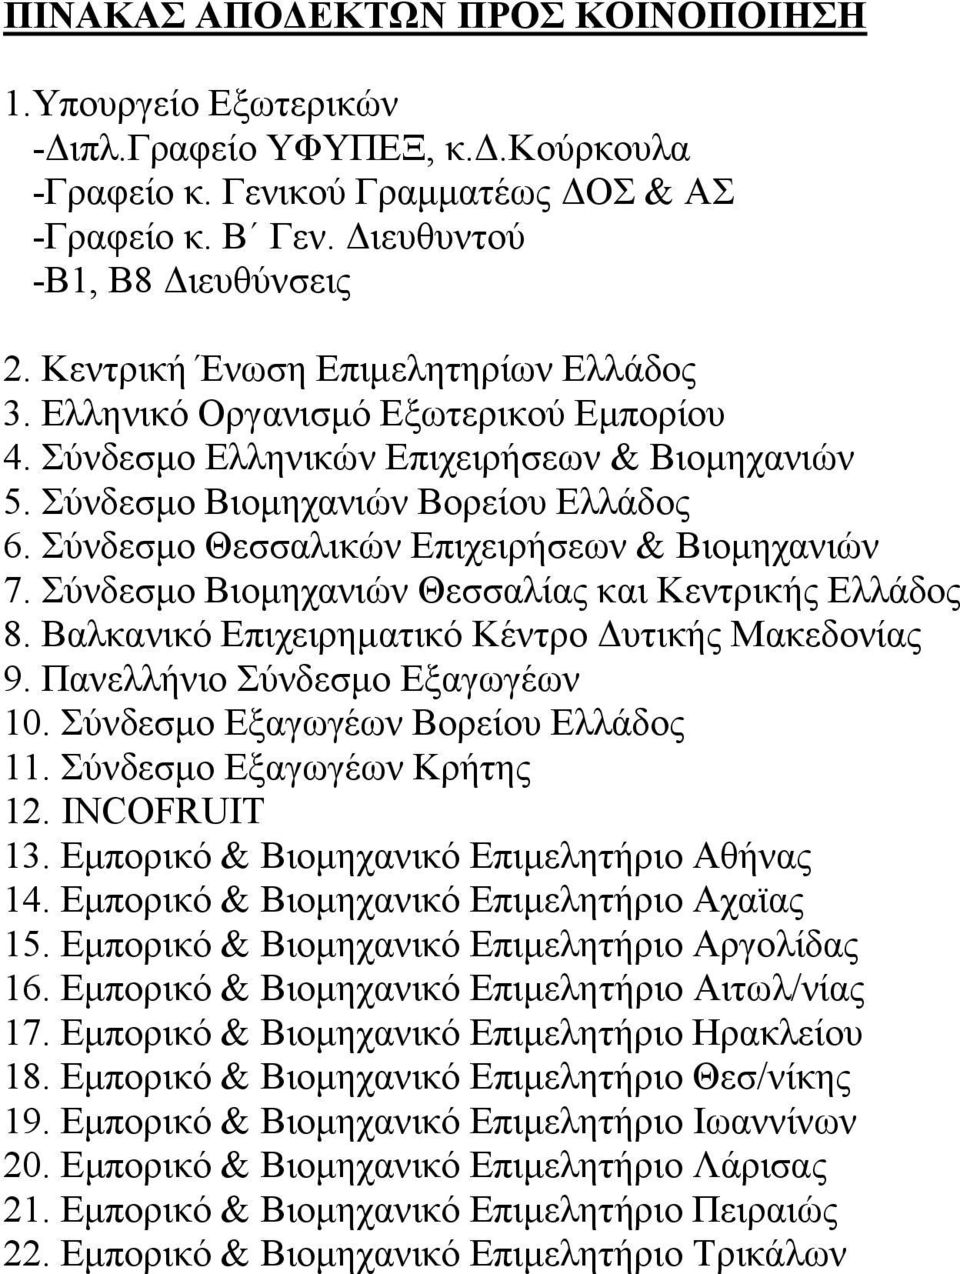 Σύνδεσμο Θεσσαλικών Επιχειρήσεων & Βιομηχανιών 7. Σύνδεσμο Βιομηχανιών Θεσσαλίας και Κεντρικής Ελλάδος 8. Βαλκανικό Επιχειρηματικό Κέντρο Δυτικής Μακεδονίας 9. Πανελλήνιο Σύνδεσμο Εξαγωγέων 10.